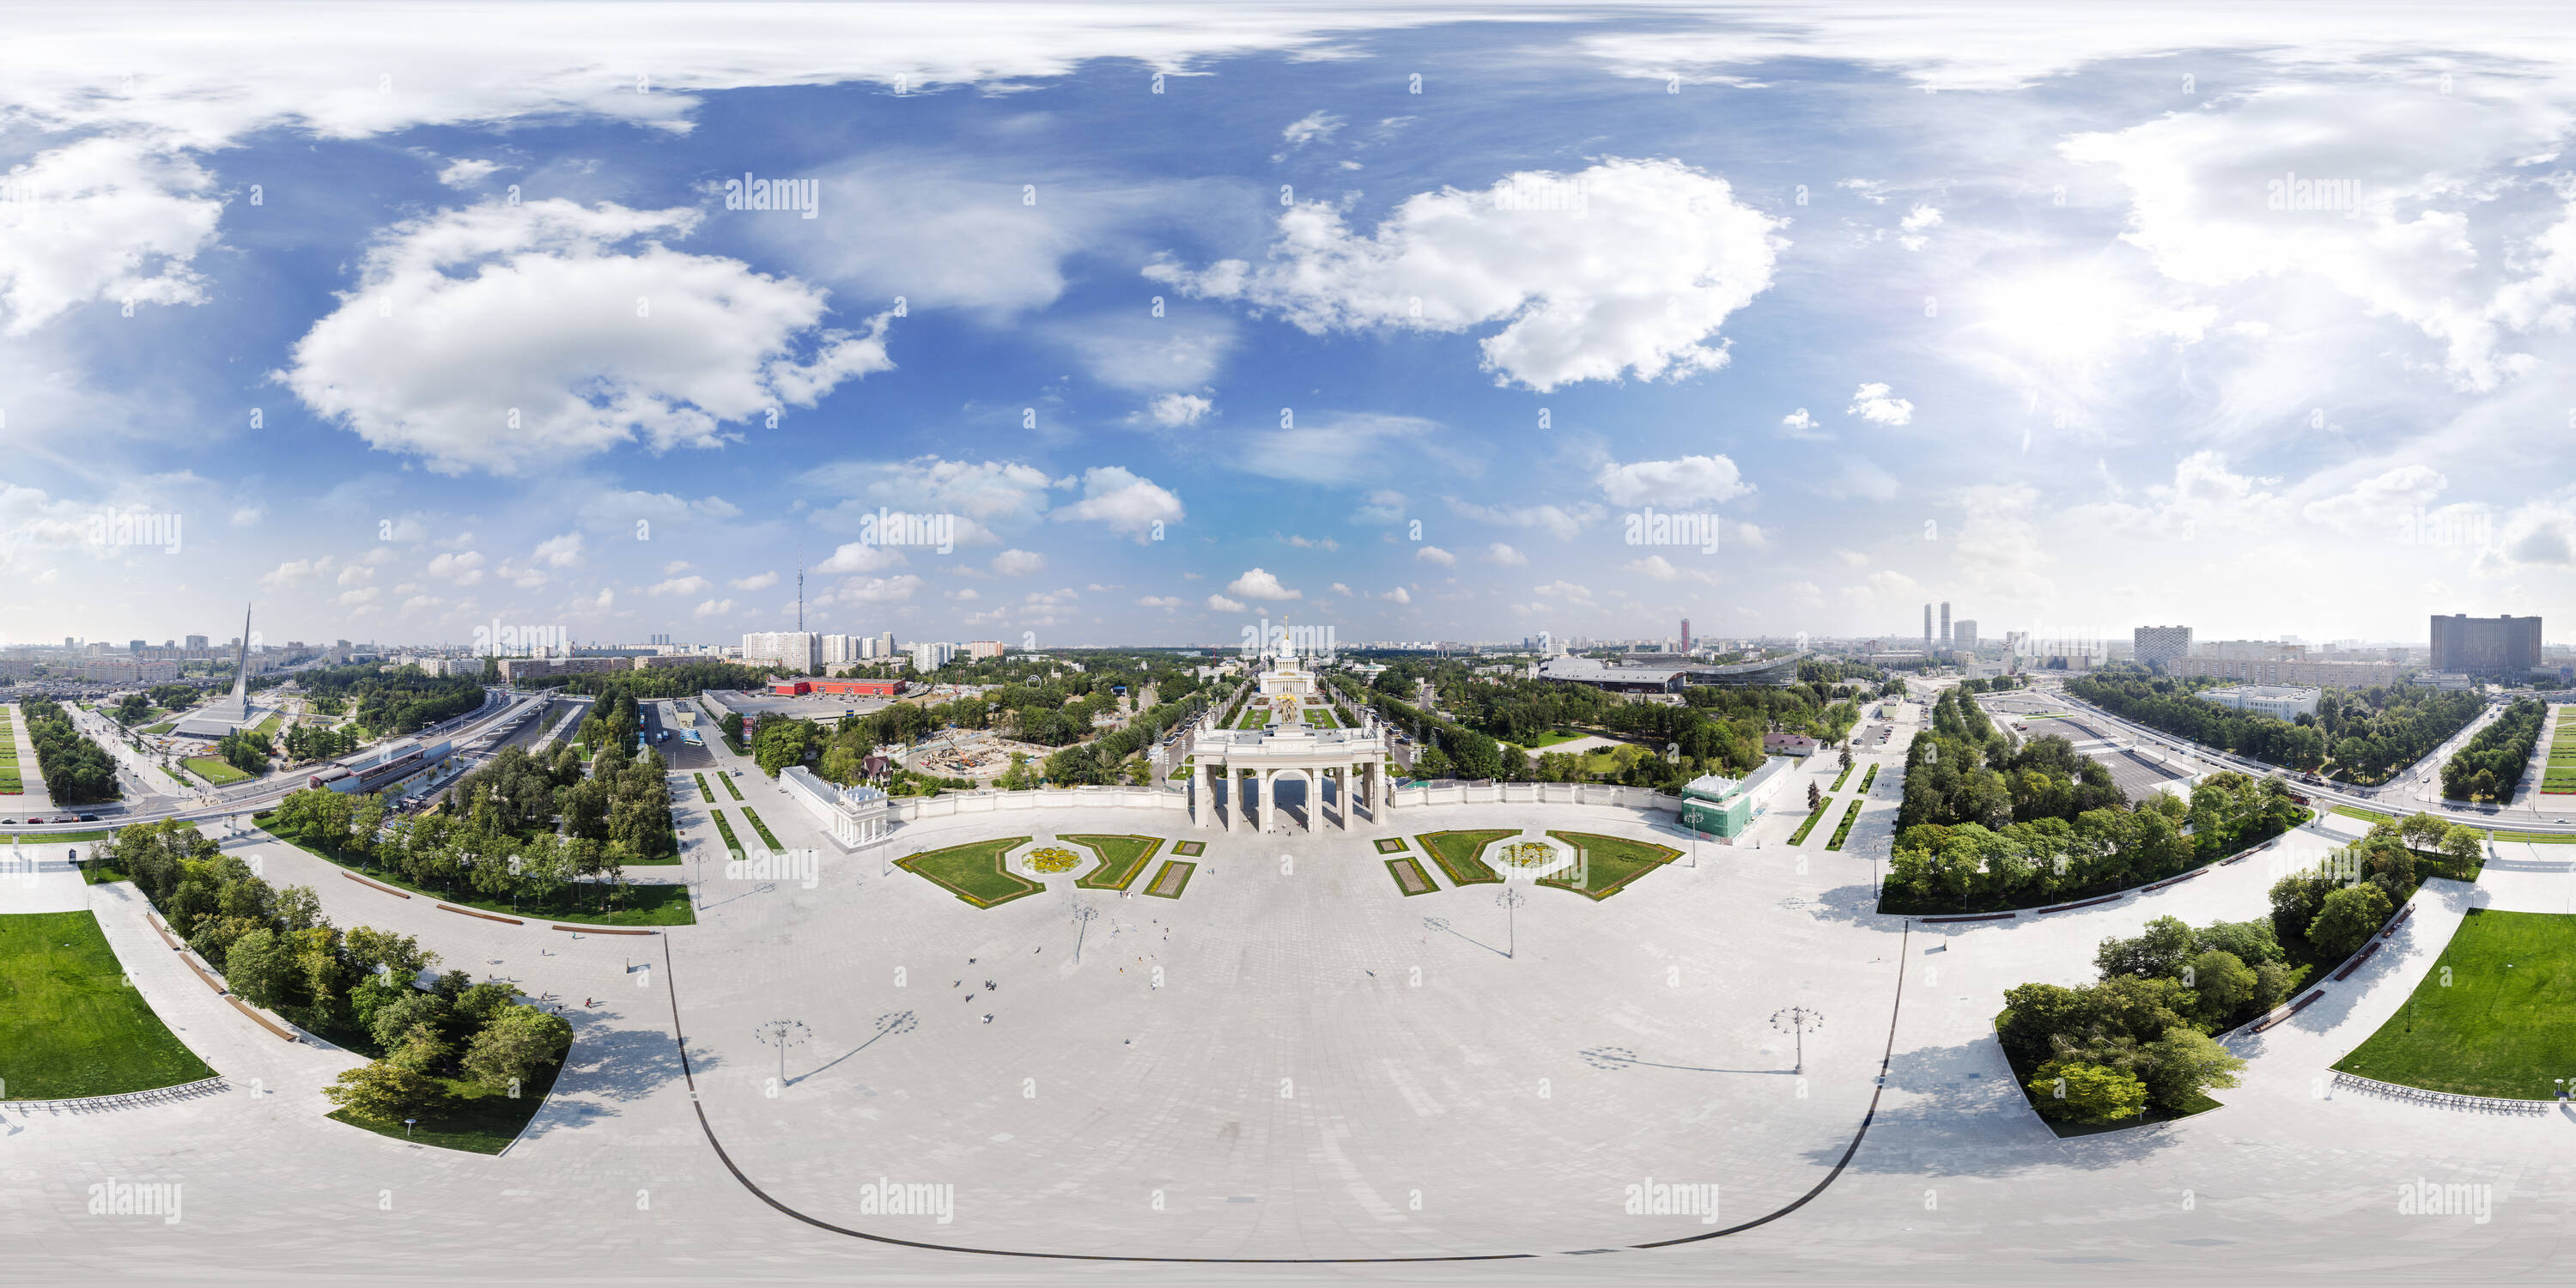 Visualizzazione panoramica a 360 gradi di VDNKH entrata principale arch